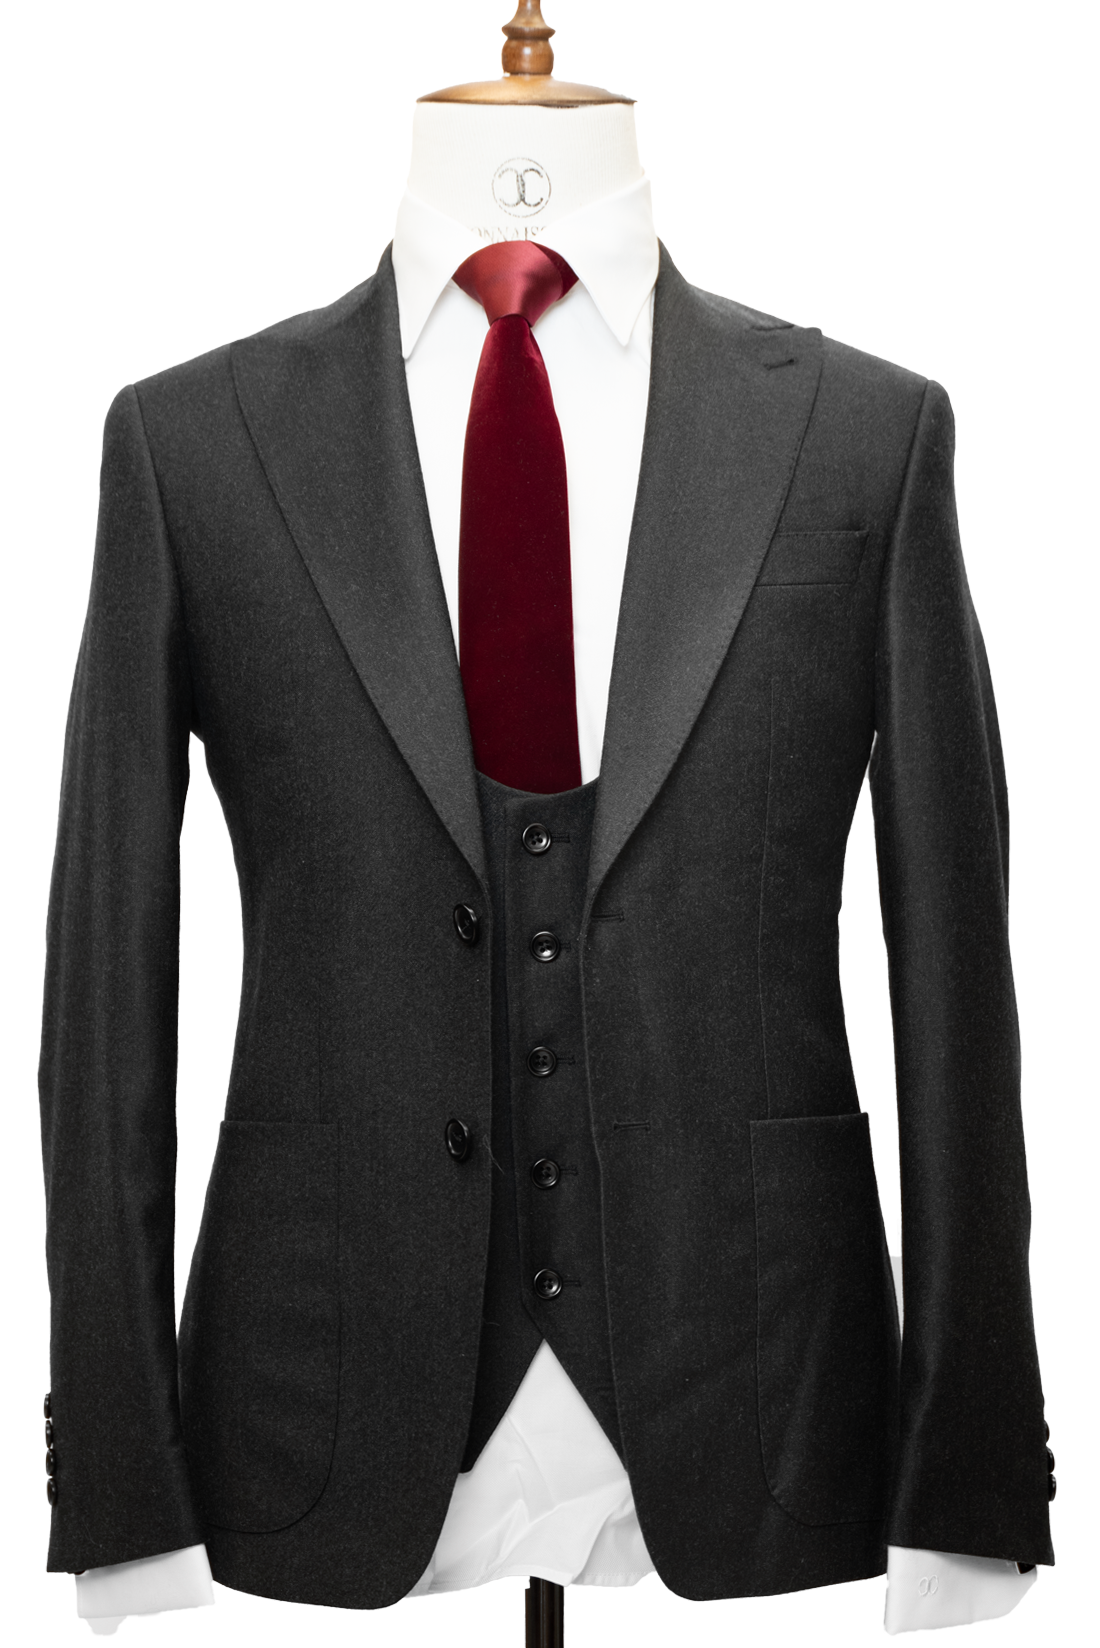 Men's 3 Piece Suit Slim Fit Suits One Button Blazer Algeria